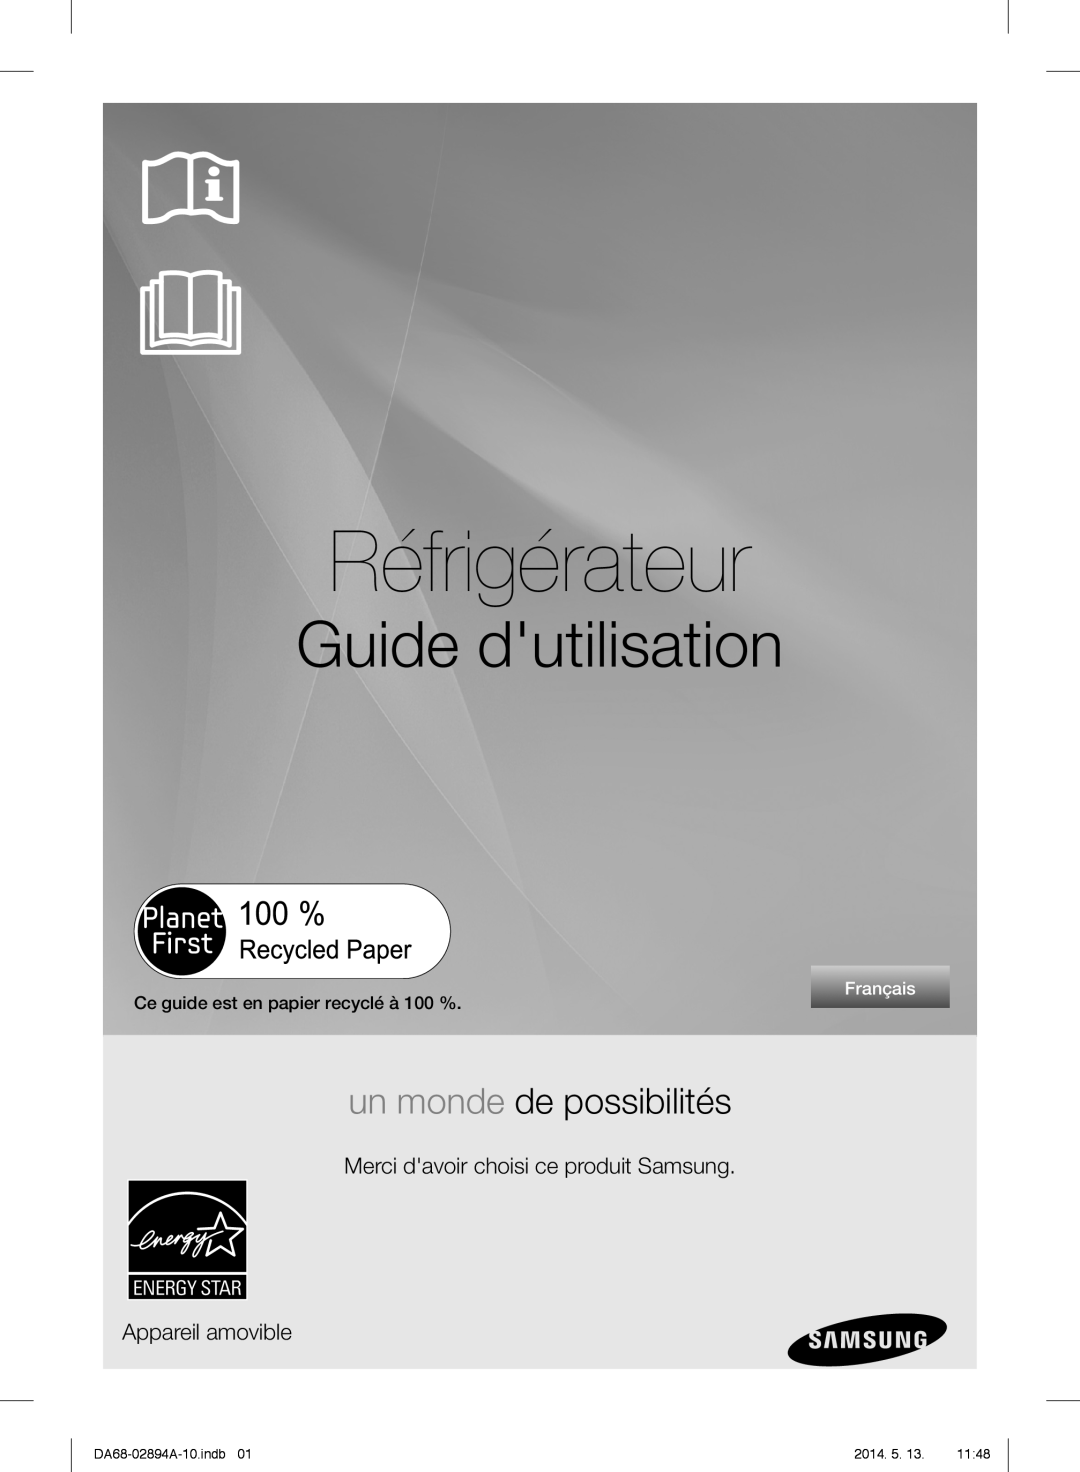 Samsung RF31FMESBSR Réfrigérateur, Guide dutilisation, un monde de possibilités, Merci davoir choisi ce produit Samsung 